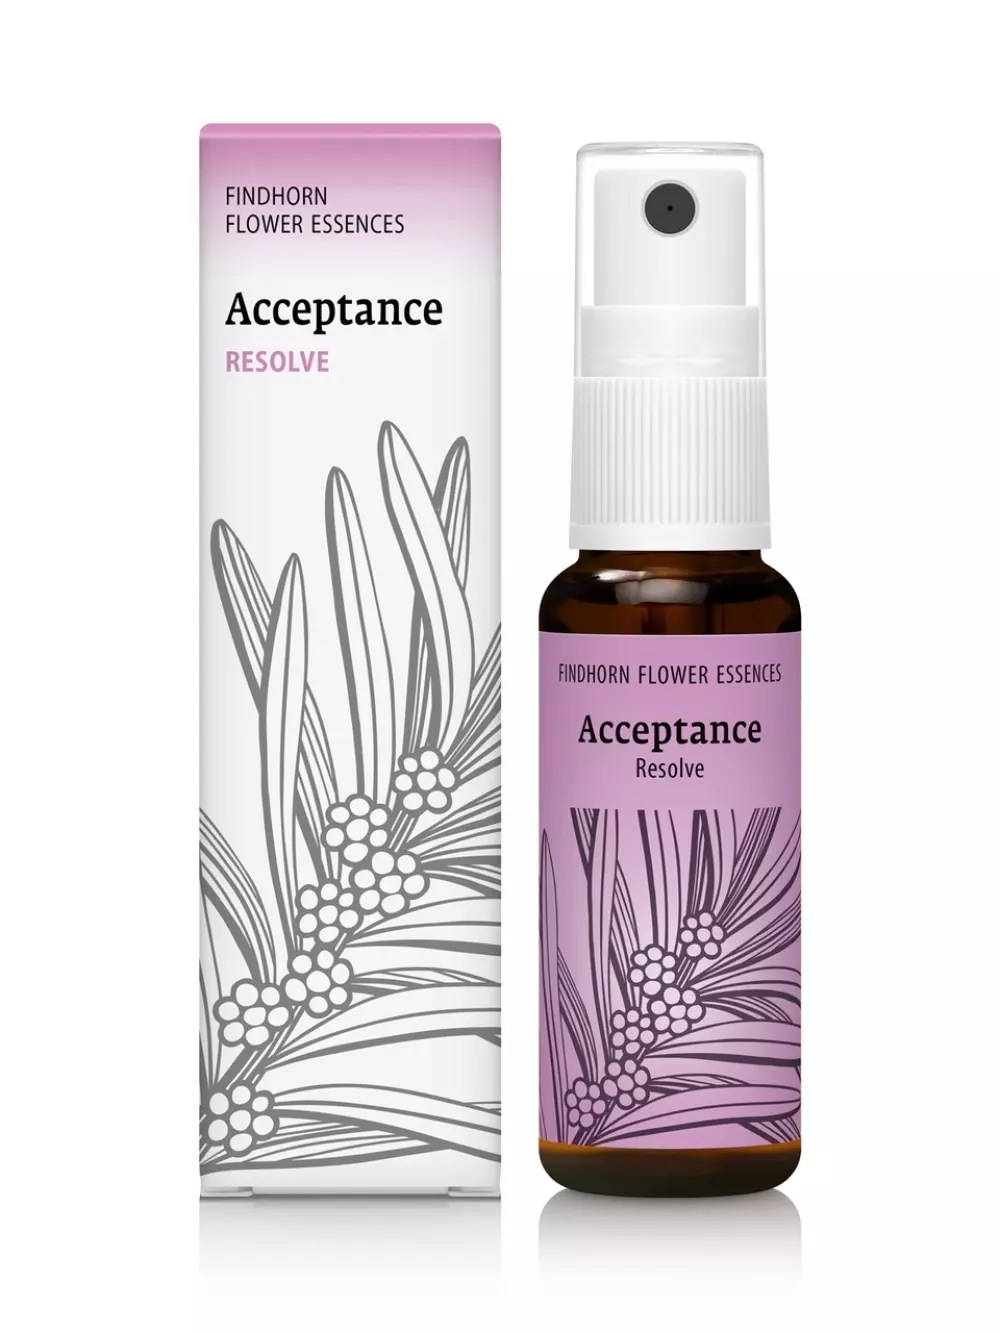 Findhorn - Acceptance 25 ml spray, Velvære & røkelse, Essenser (Vibrasjonell medisin), flower essence spray - Resolve